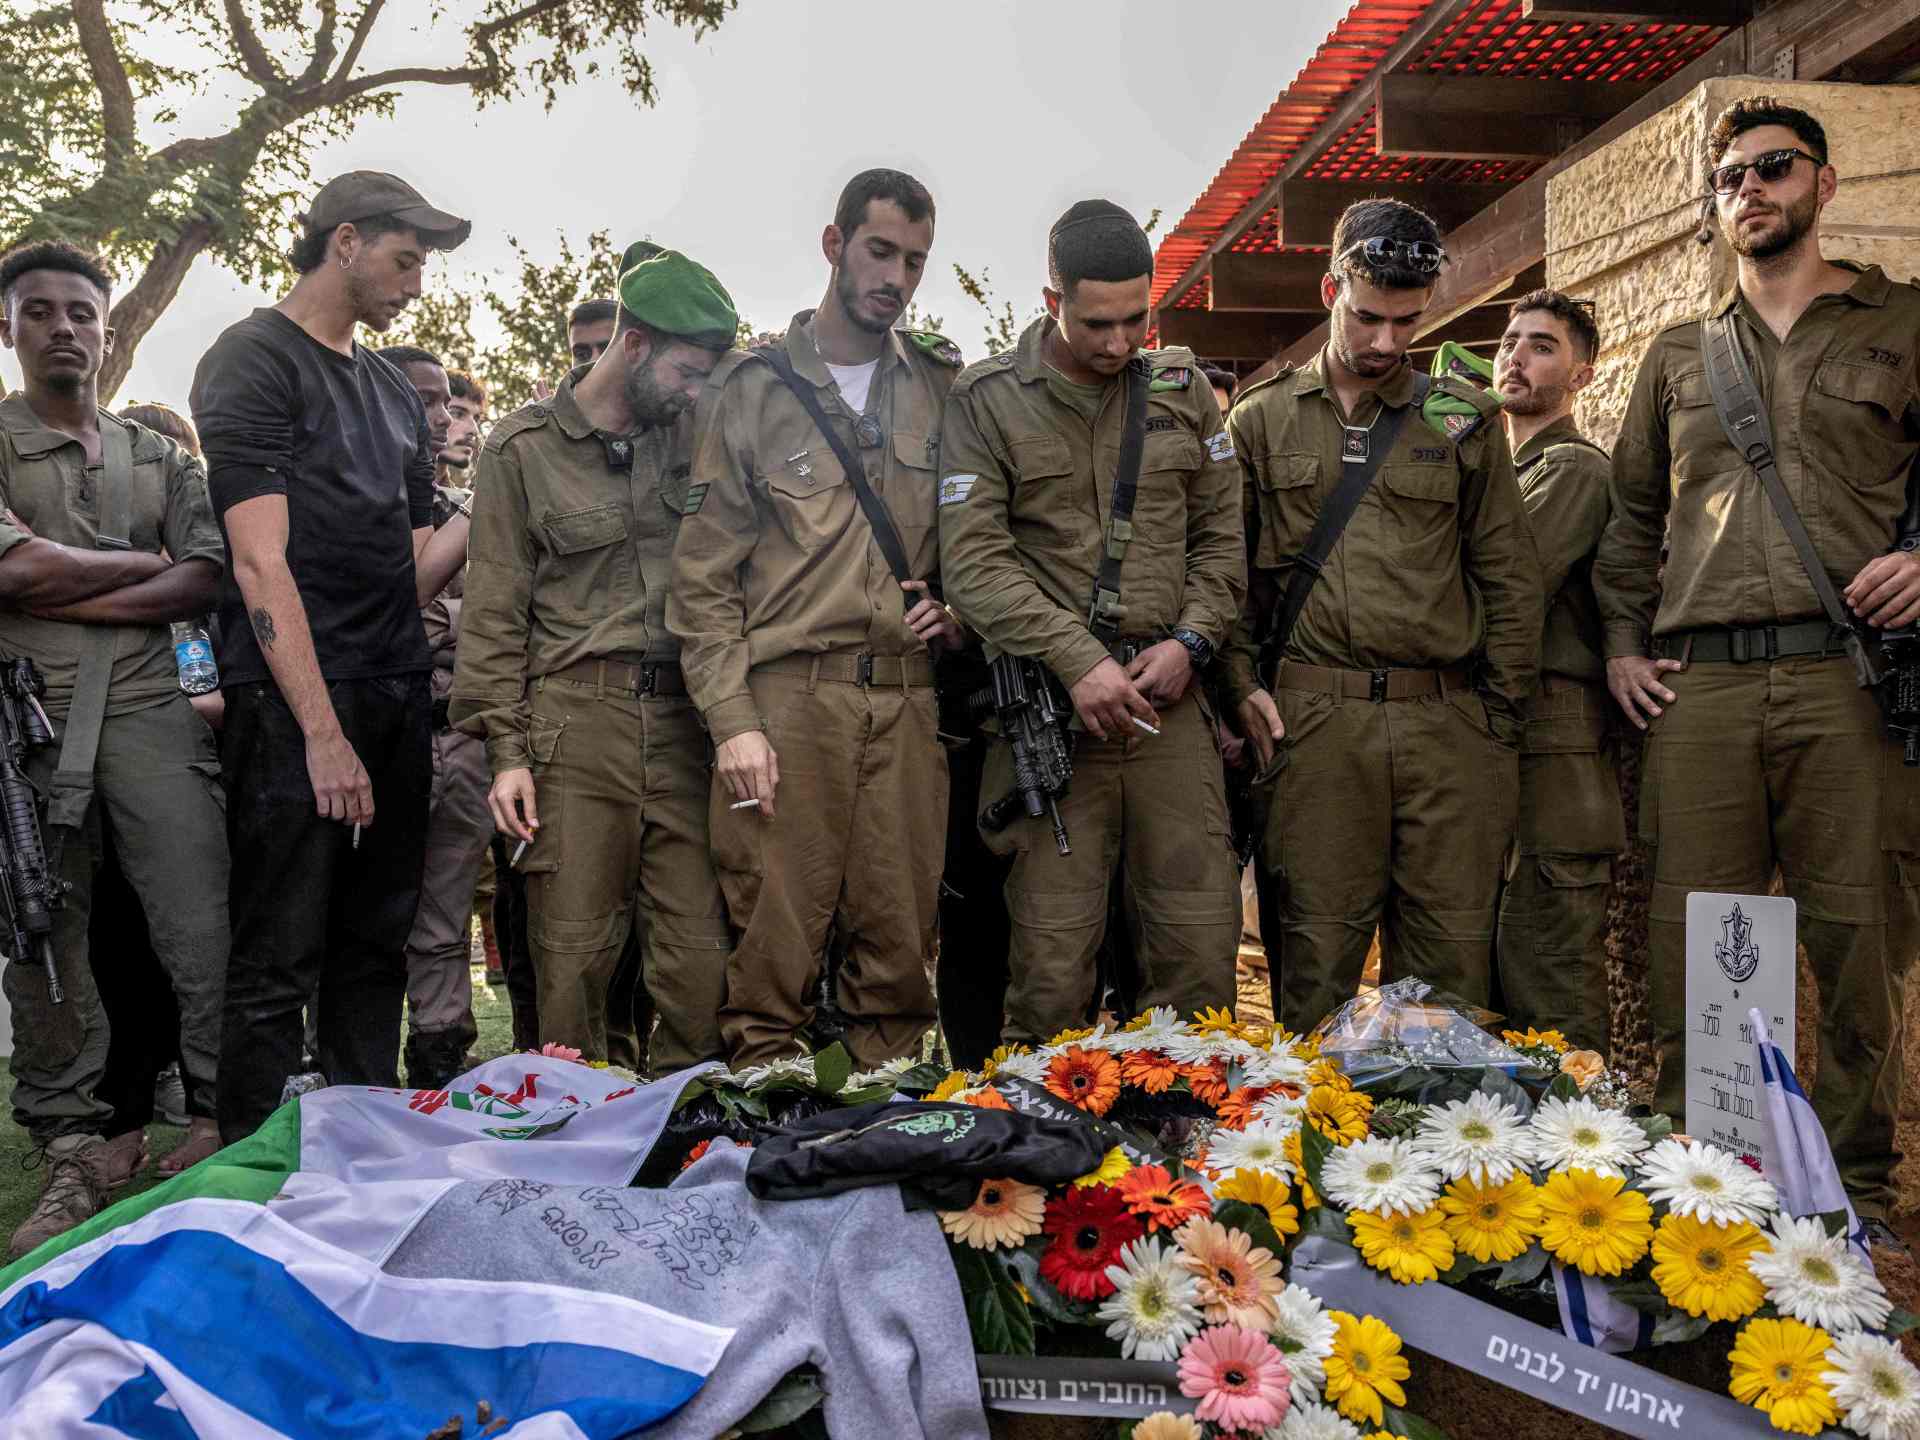 أقسى أيام الحرب.. إسرائيل تعلن مقتل 14 عسكريا وإصابة 44 بيوم واحد | أخبار – البوكس نيوز